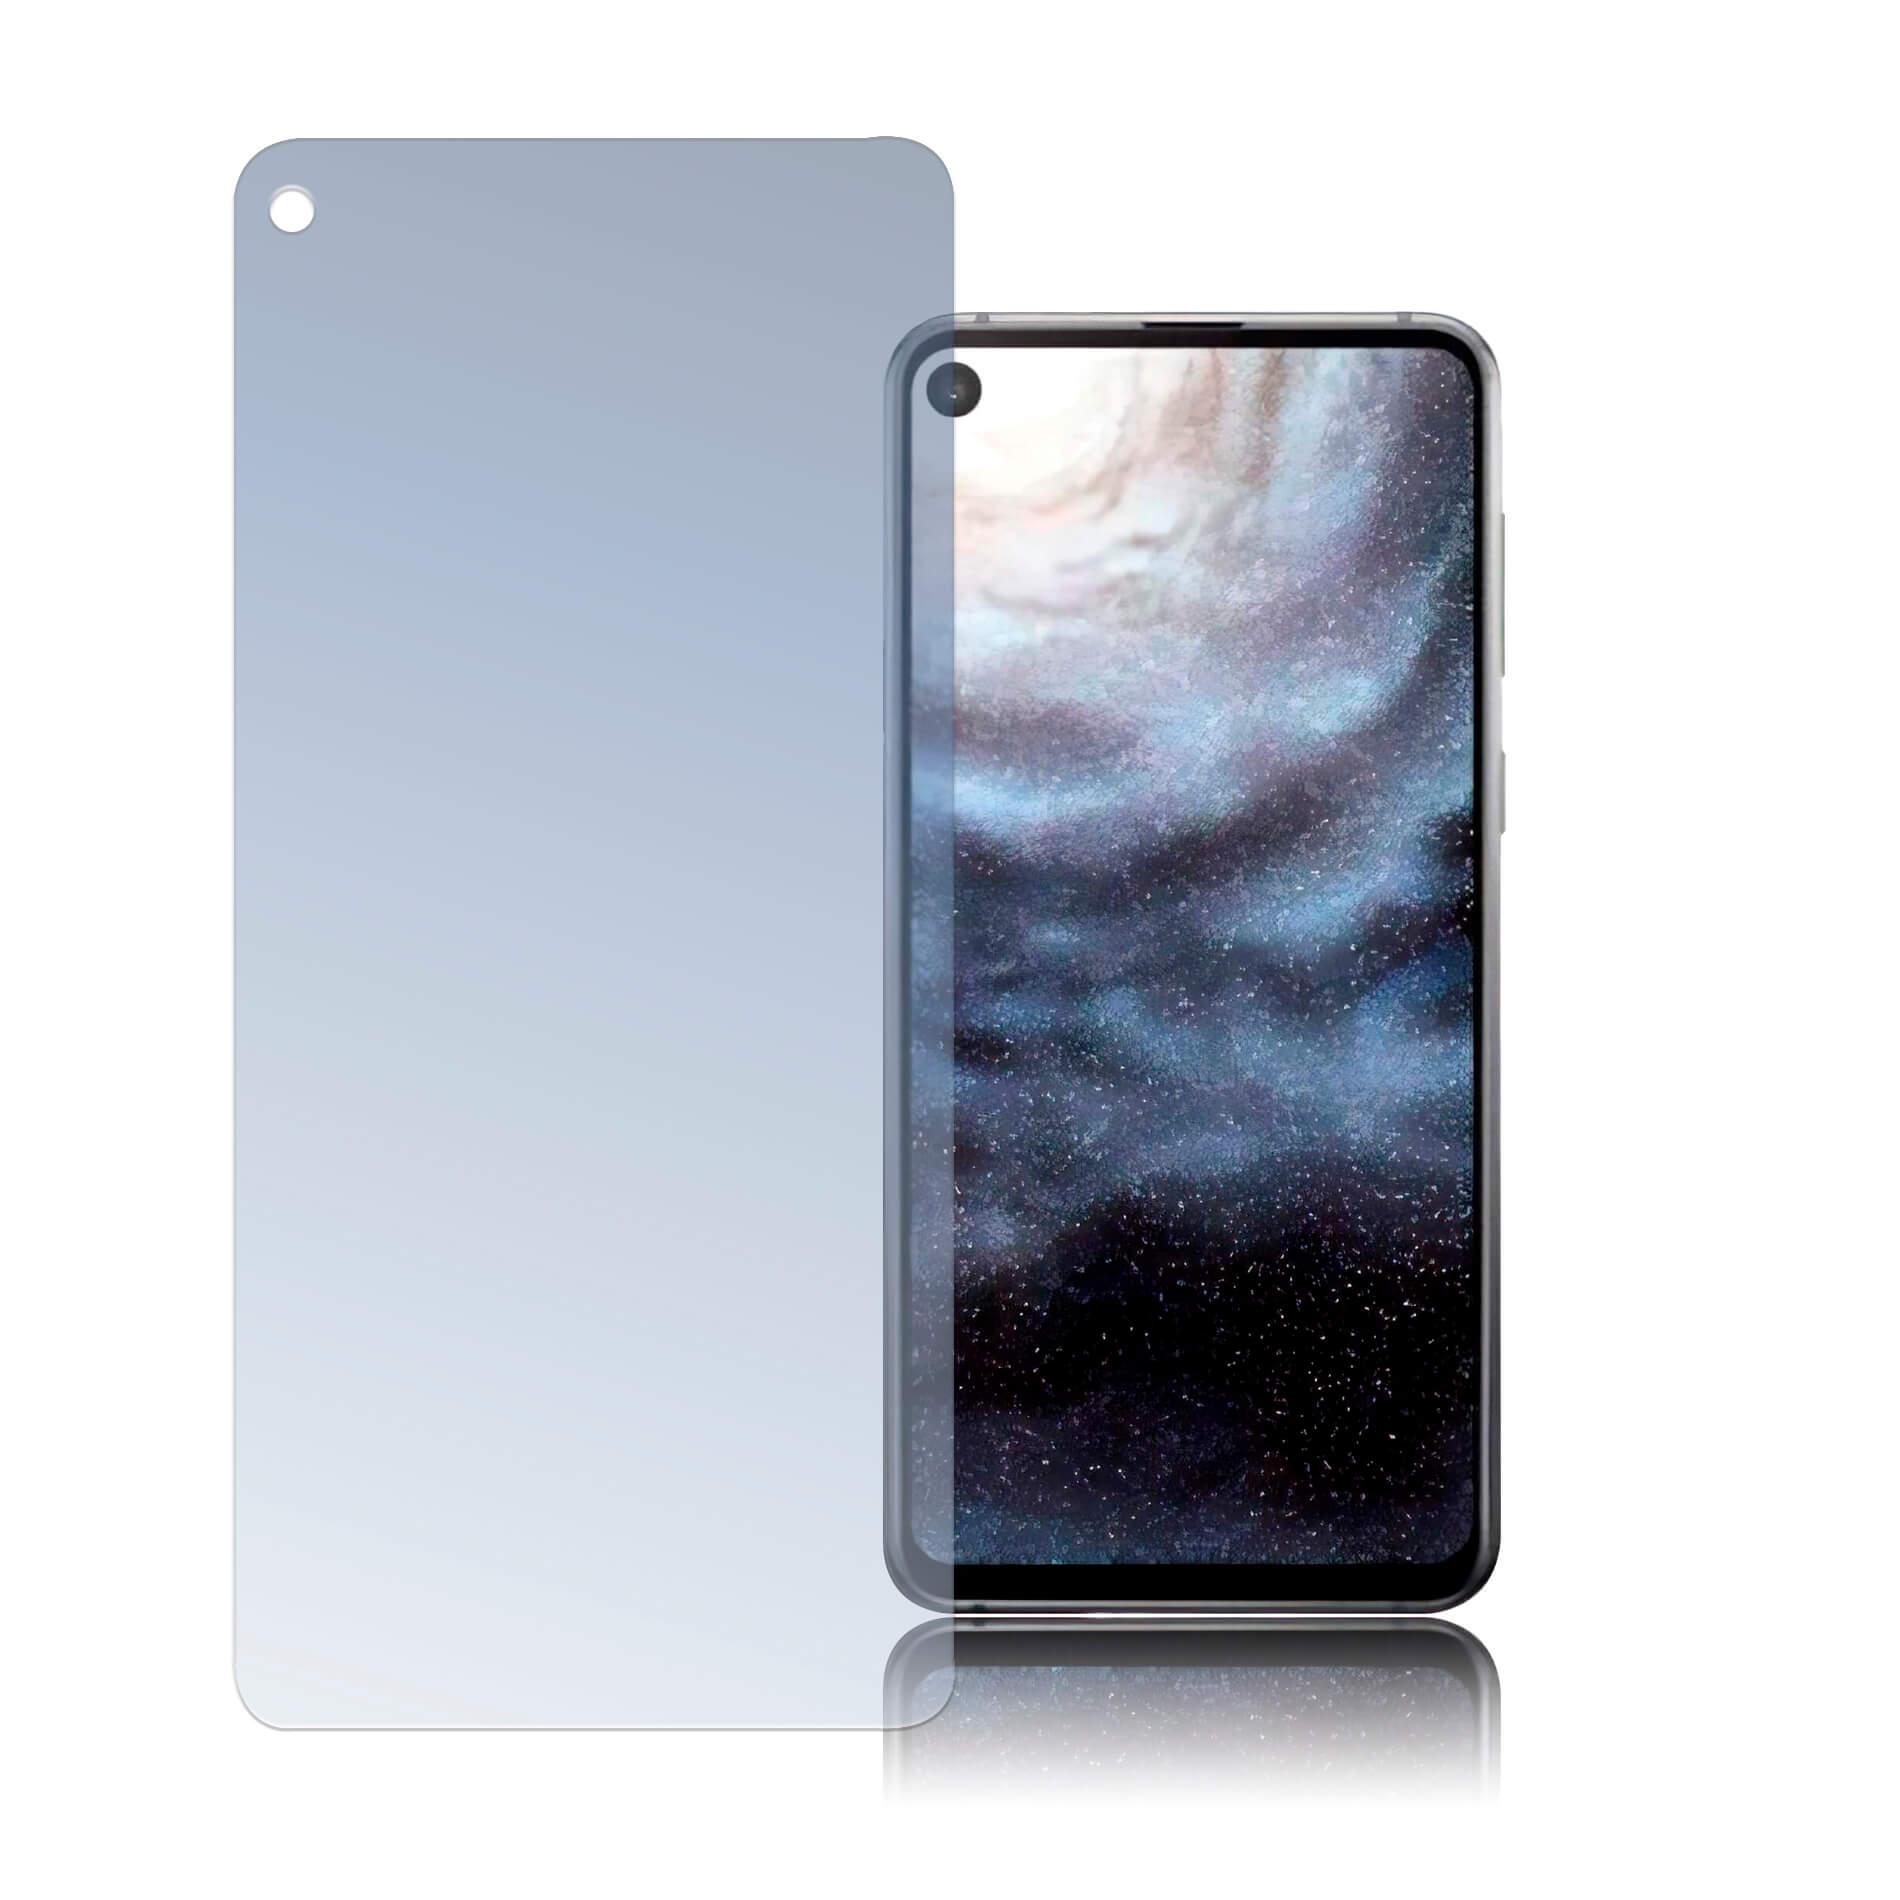 4smarts Second Glass Limited Cover - калено стъклено защитно покритие за дисплея на Samsung Galaxy A8s (прозрачен)